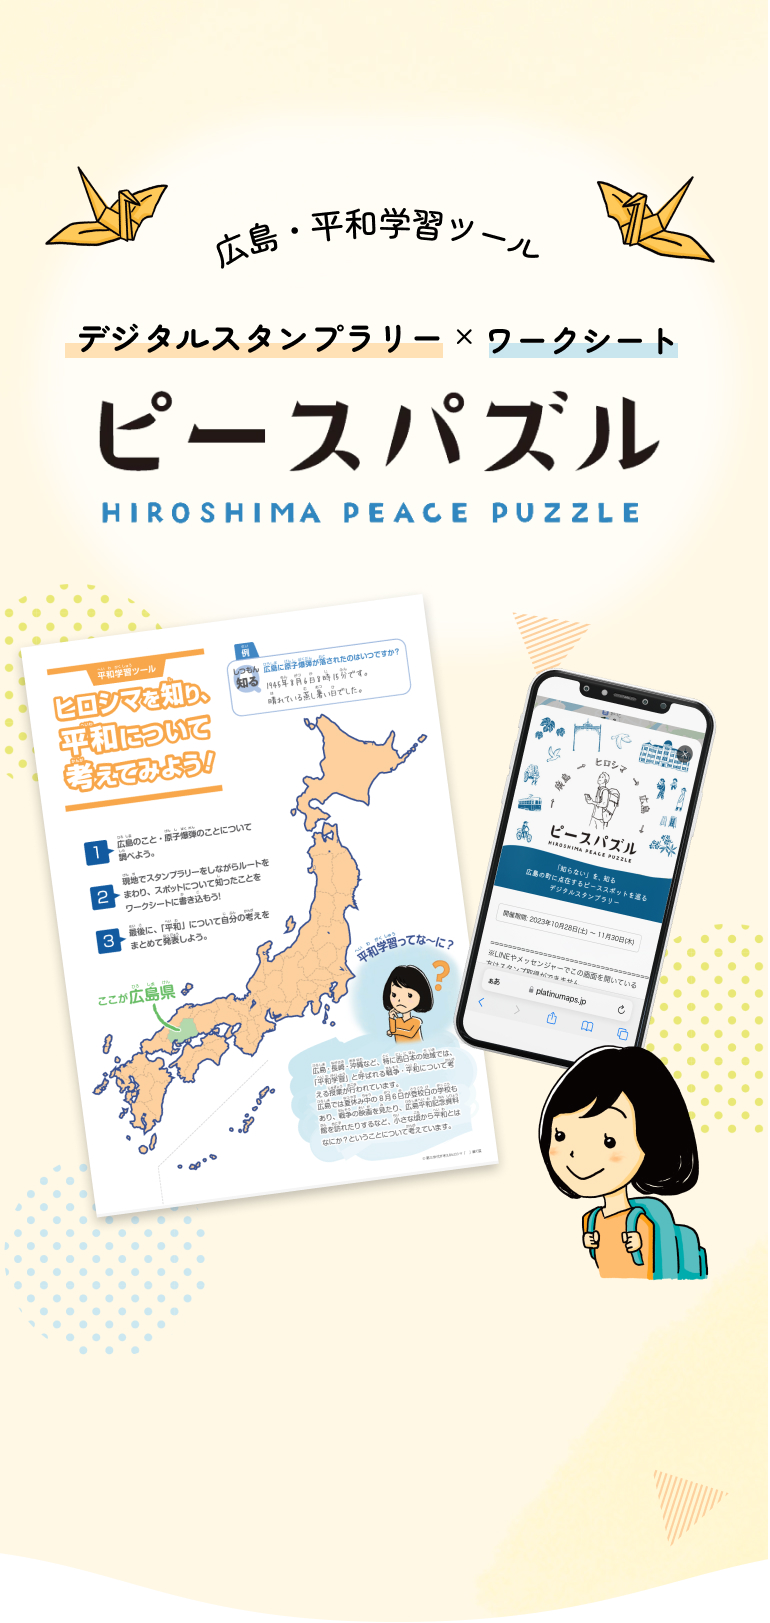 ピースパズル - 広島のまちに点在するピーススポットを巡るデジタルスタンプラリー